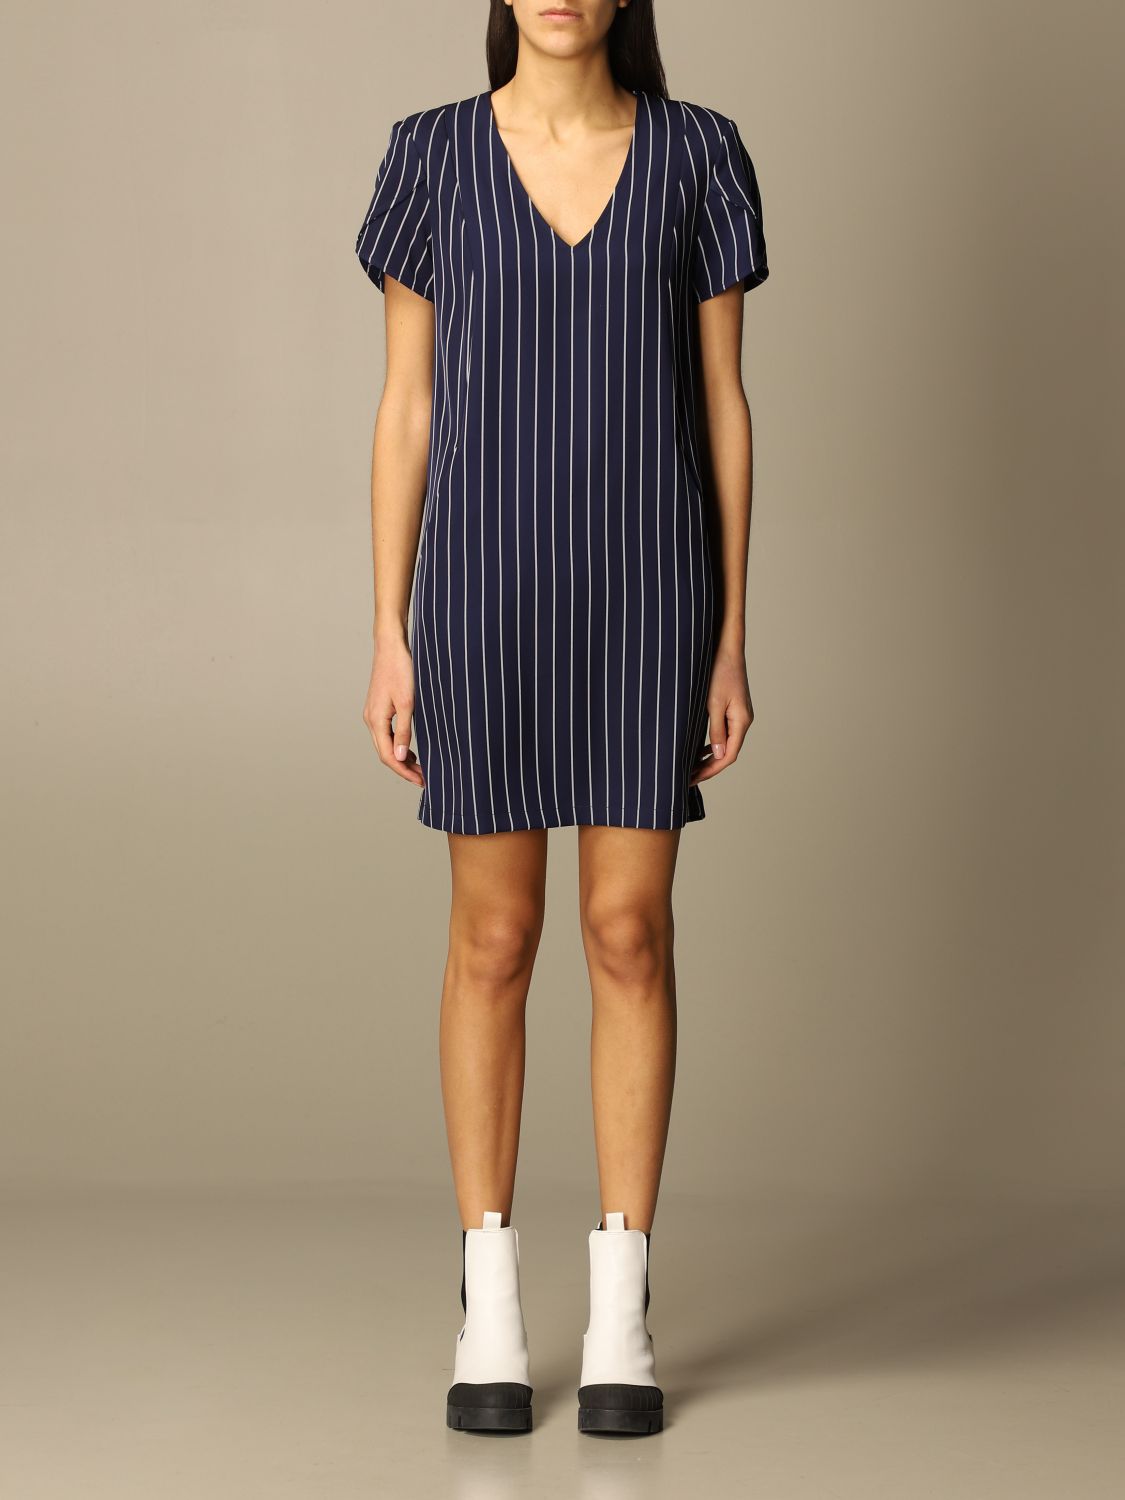 LIU JO: short striped dress - Blue | Liu Jo dress WA1194T4790 online at ...